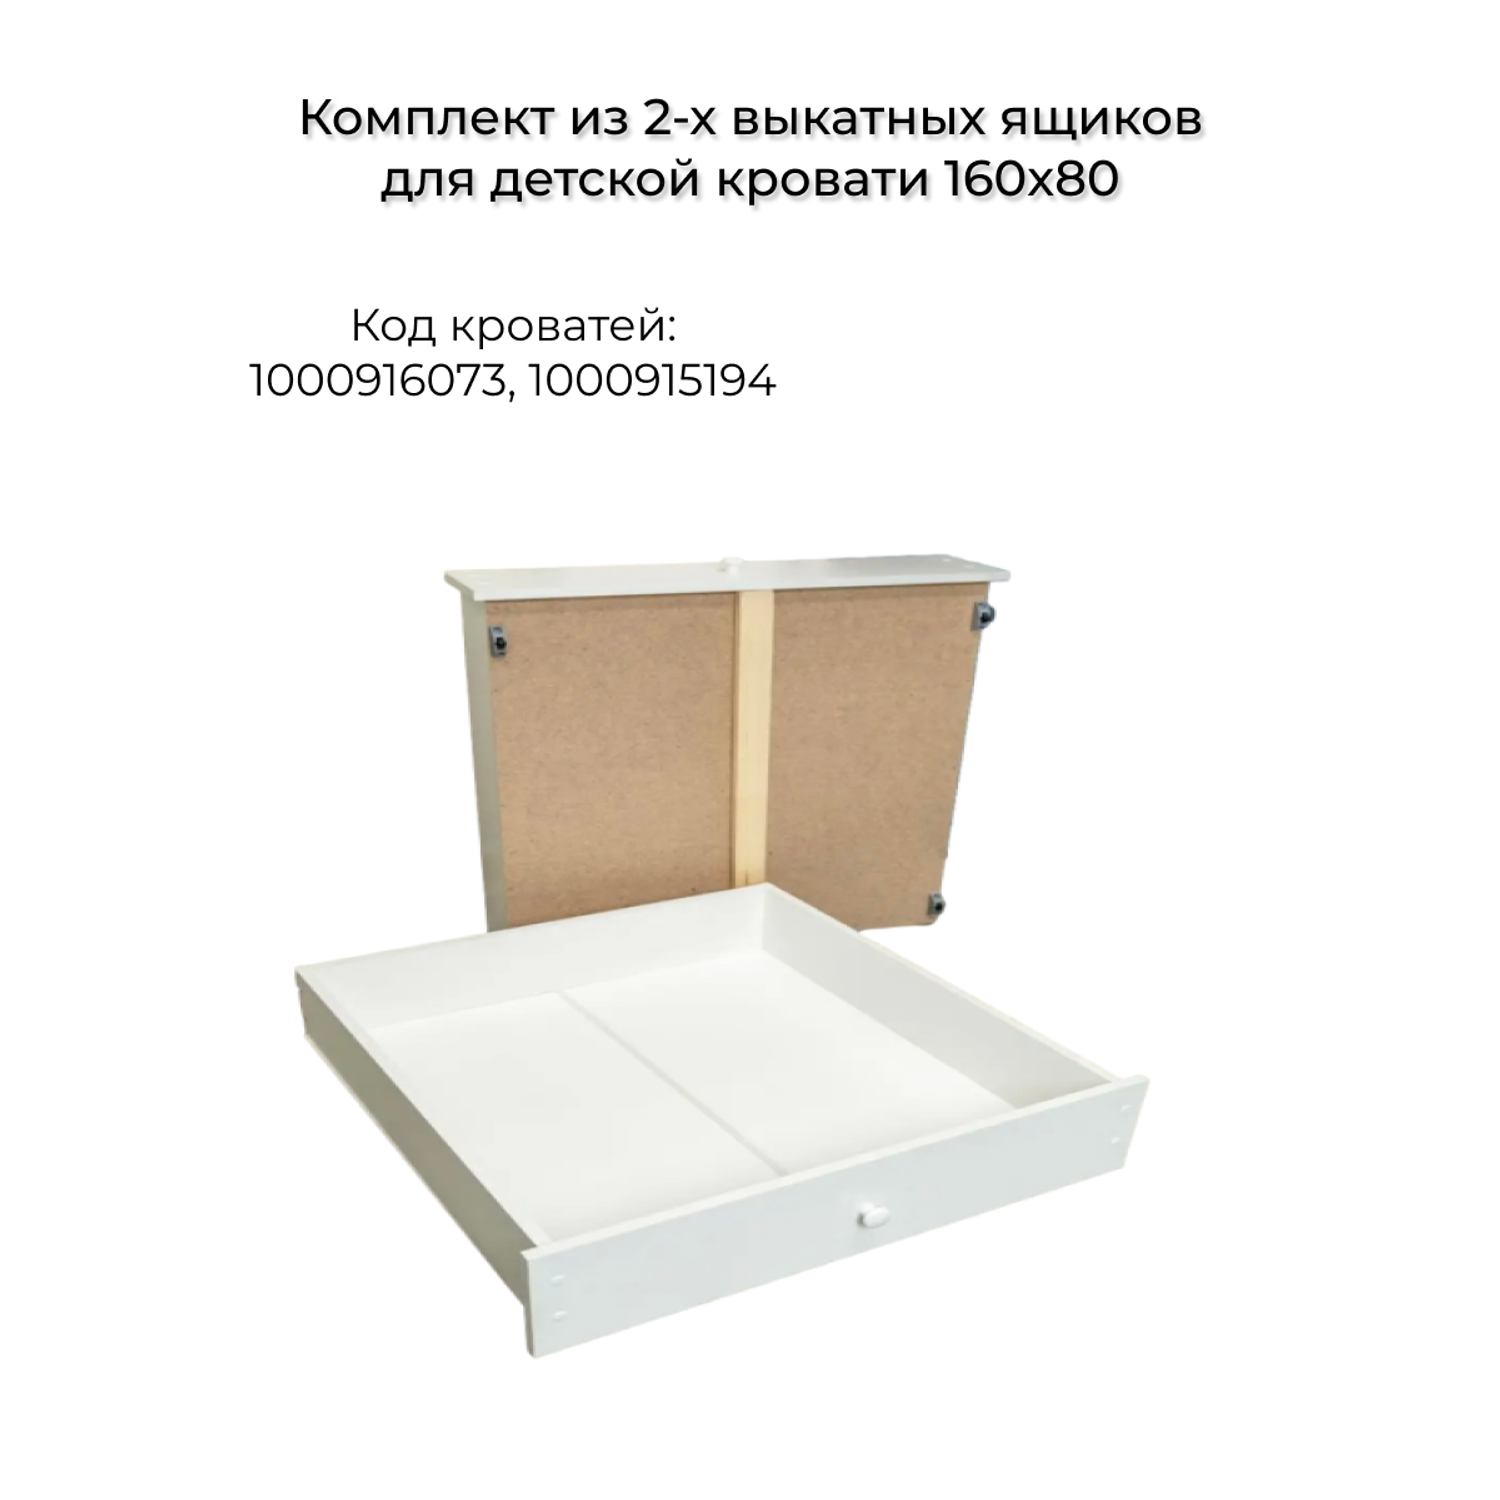 Ящик подкроватный Moms charm для кровати 160 на 80 см - фото 1